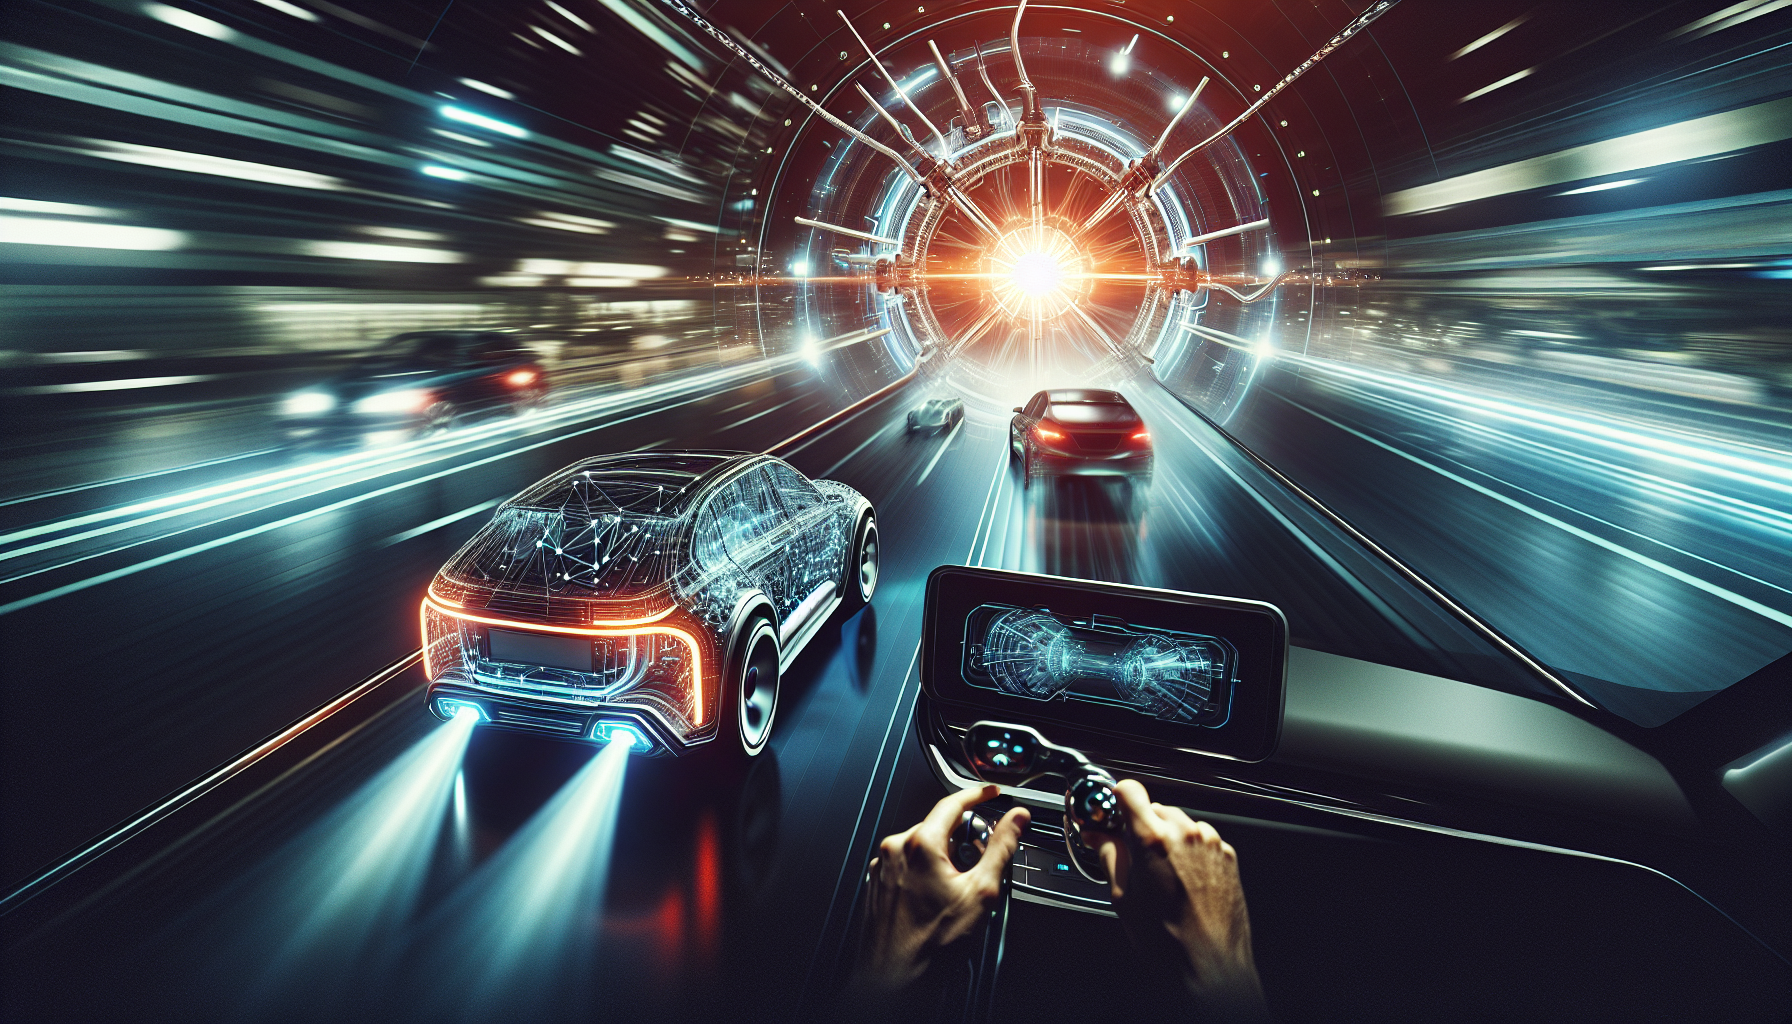 ontdek hoe digitale technologie een revolutie teweegbrengt in de auto-industrie met Hyundai en zijn innovatieve expertise.